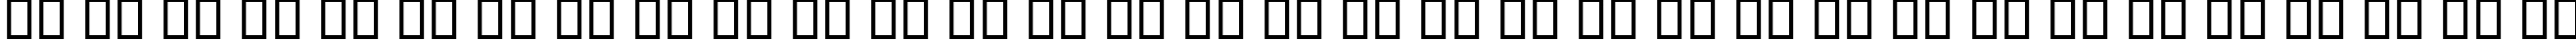 Пример написания русского алфавита шрифтом B Sahar